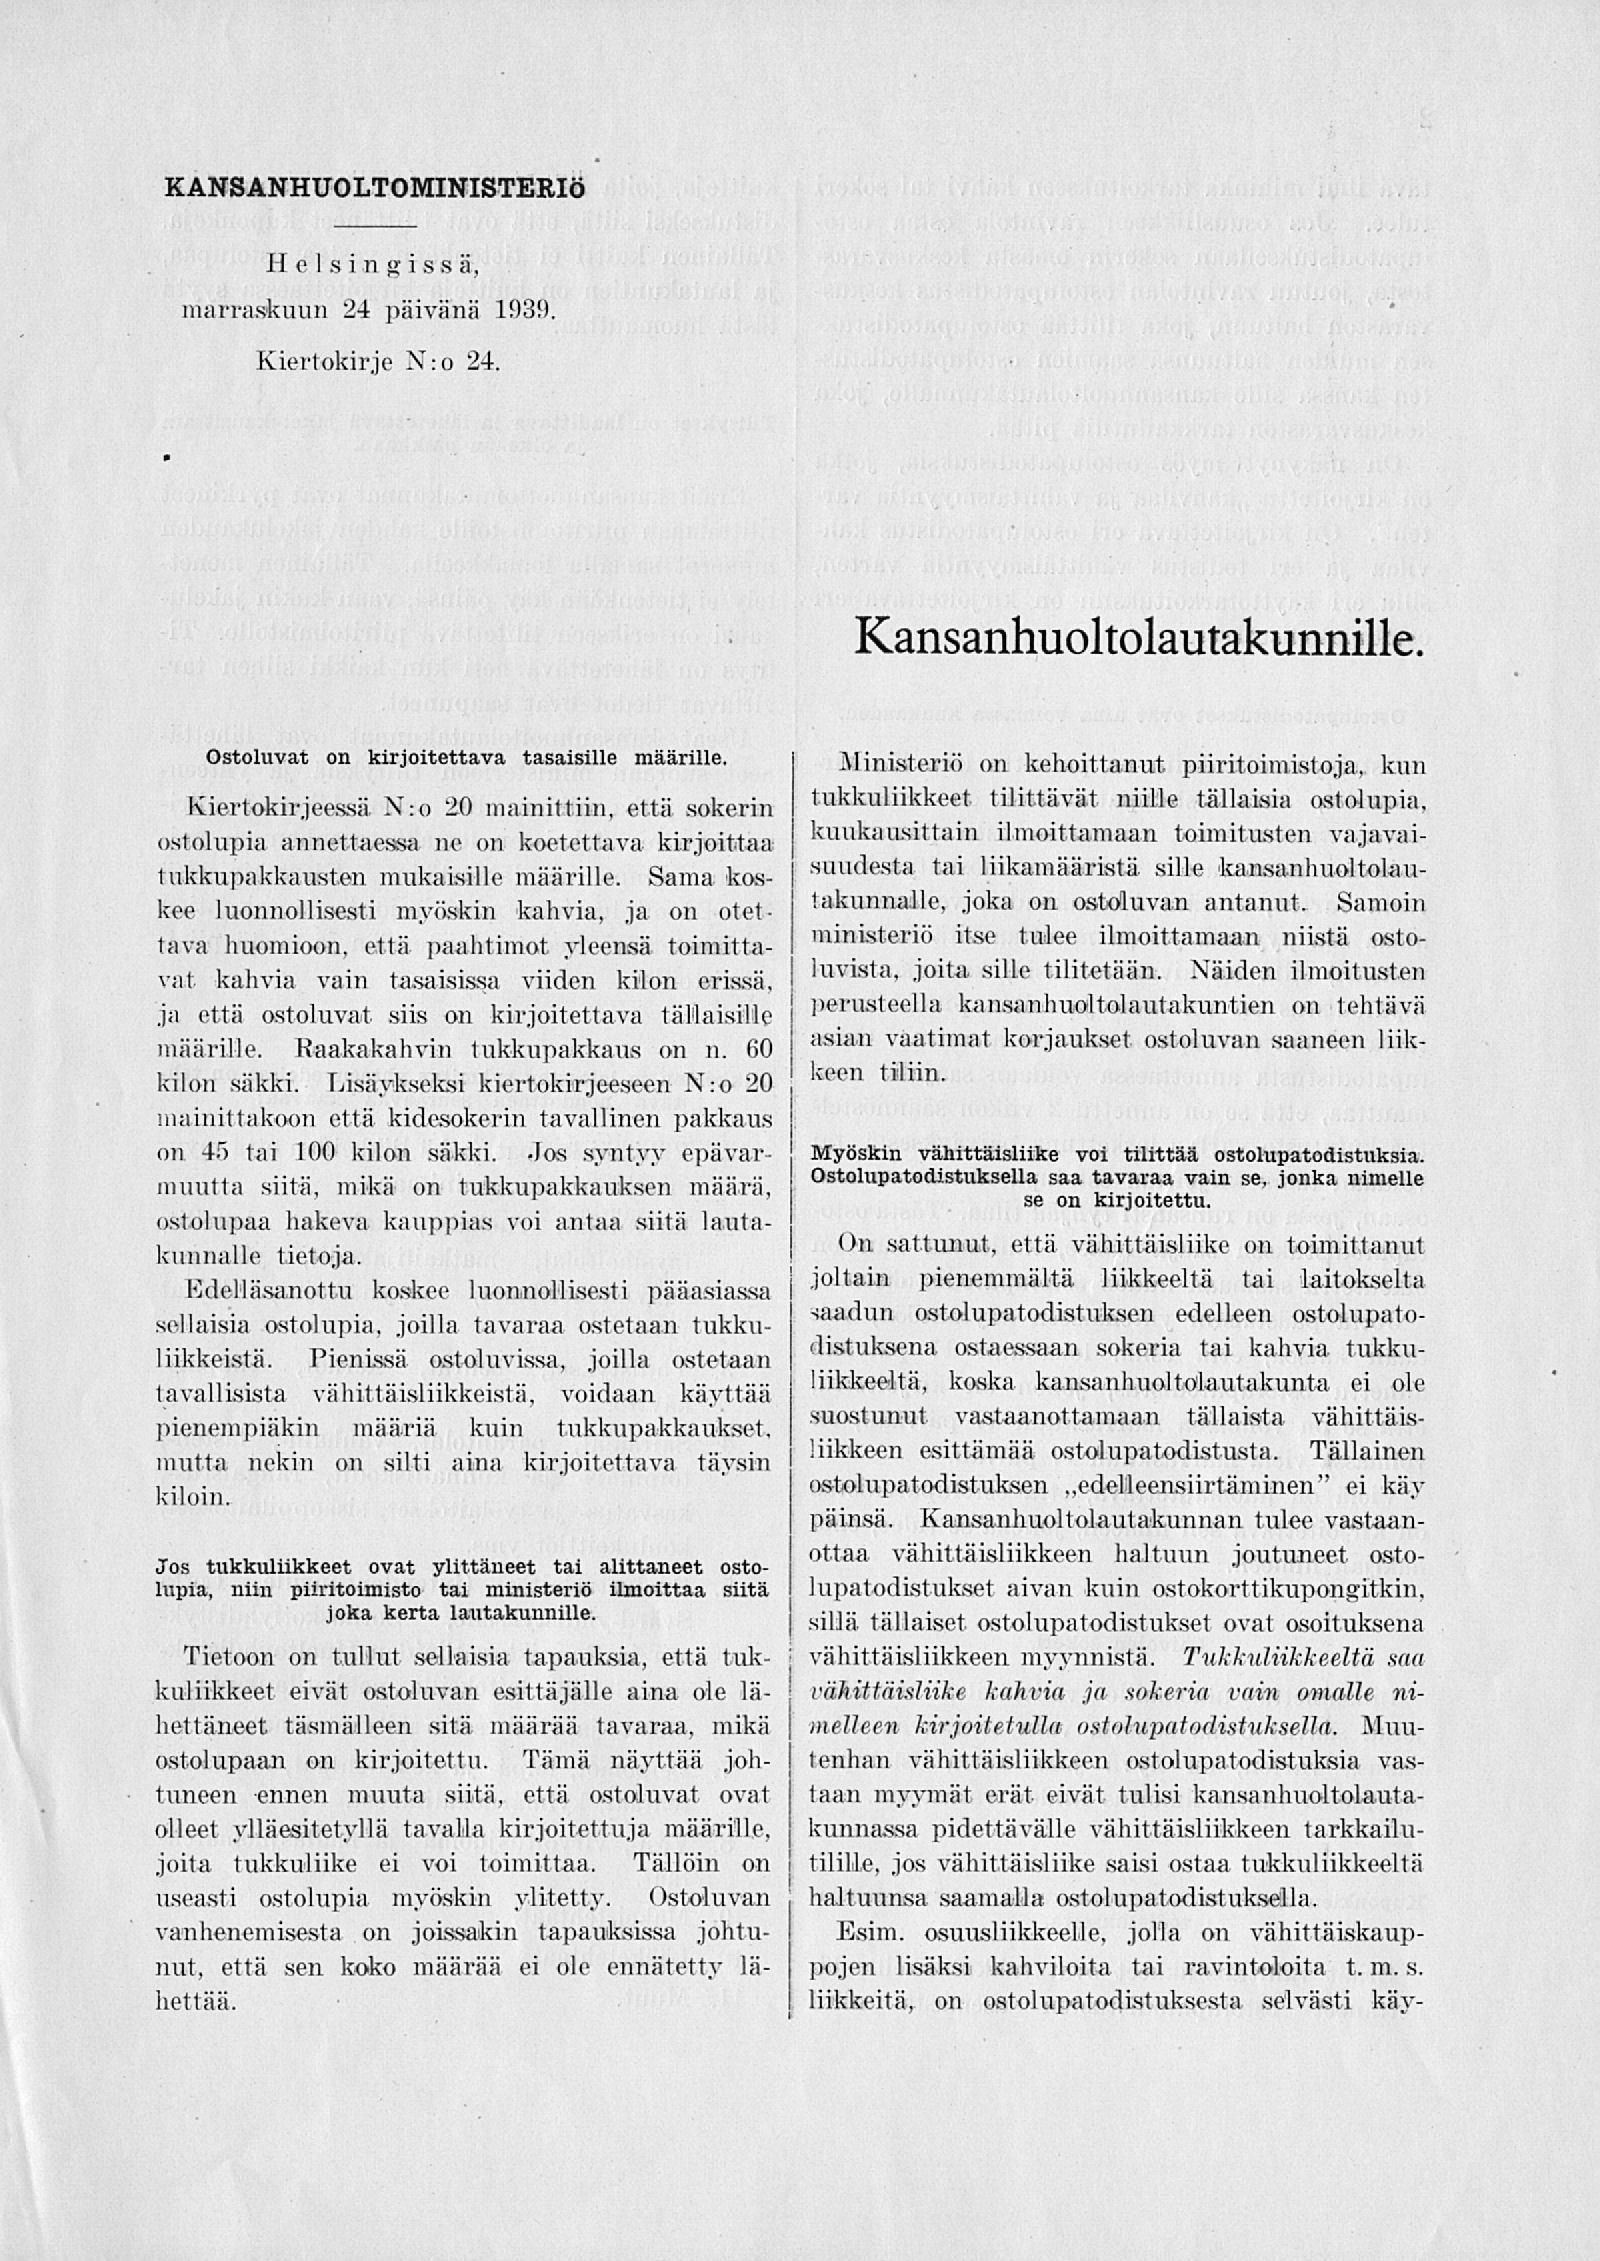 KANSANHUOLTOMINISTERIÖ Helsingissä, marraskuun 24 päivänä 1939. Kiertokirje X:o 24. Kansanhuoltolautakunnille Ostoluvat on kirjoitettava tasaisille määrille. Kiertokirjeessä N:o 20 mainittiin, että.